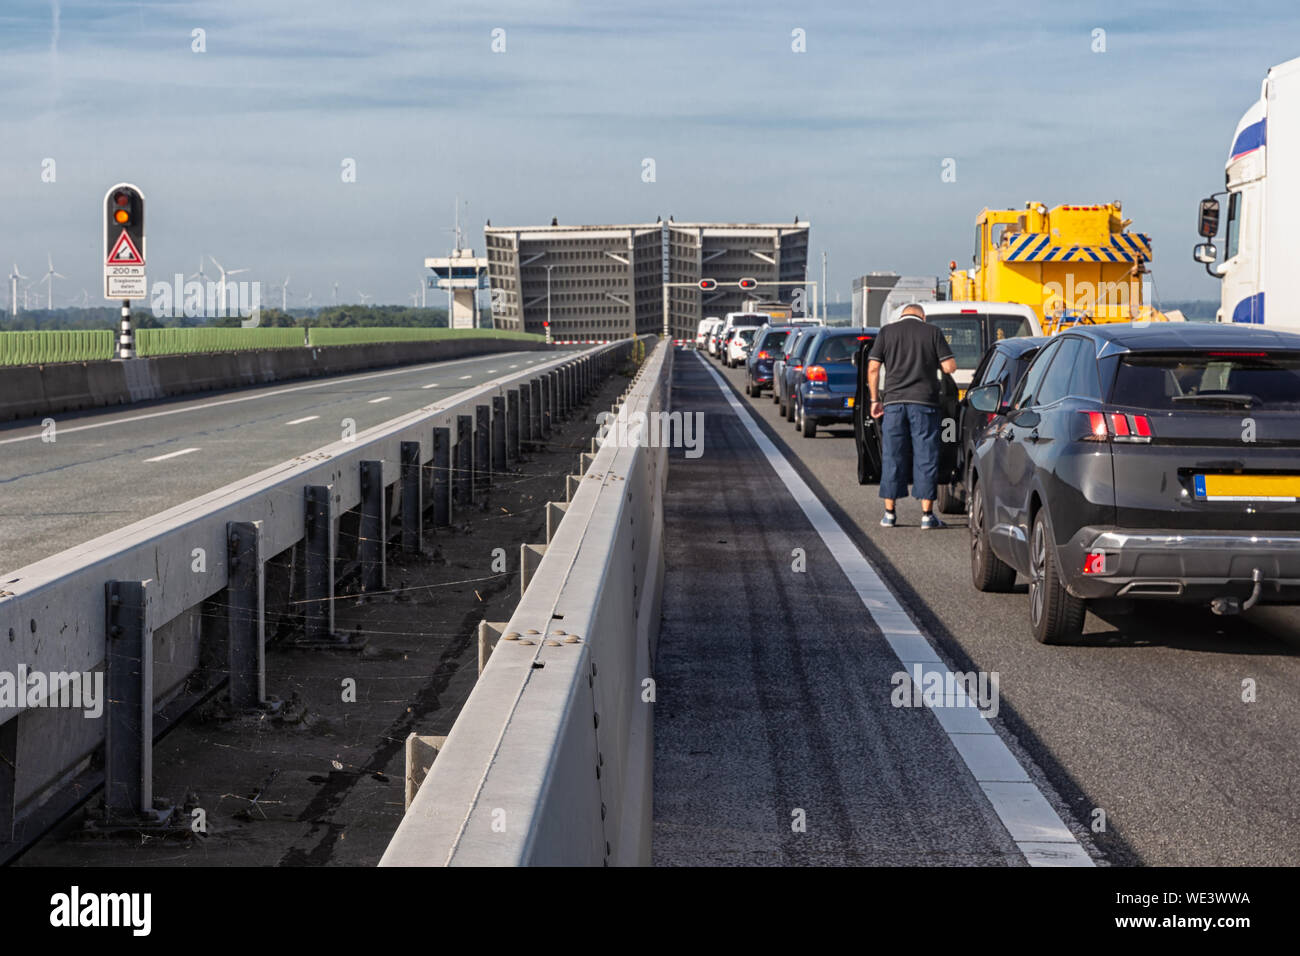 Warten Autos für offenen Brücke niederländische Ketelbrug in der Nähe von Lelystad Stockfoto